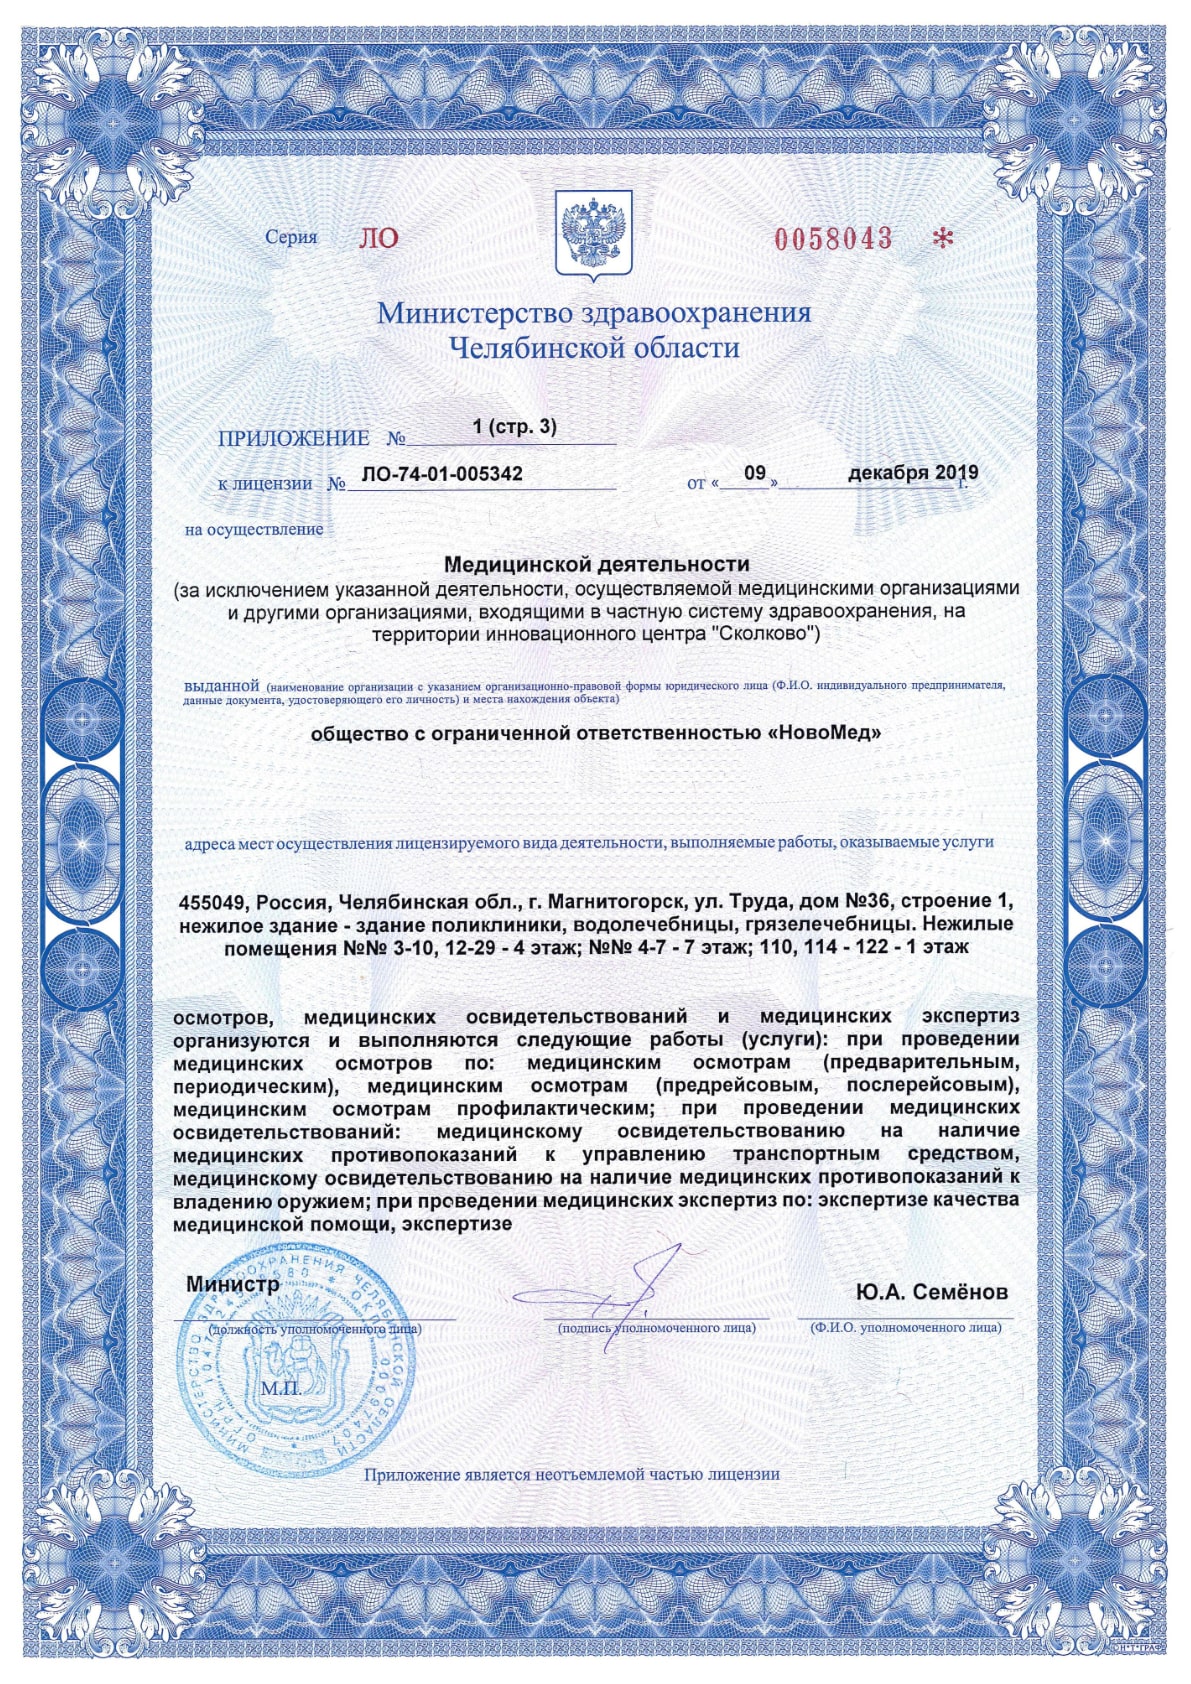 Приложение №1 к лицензии ЛО-74-01-005342, лист 3